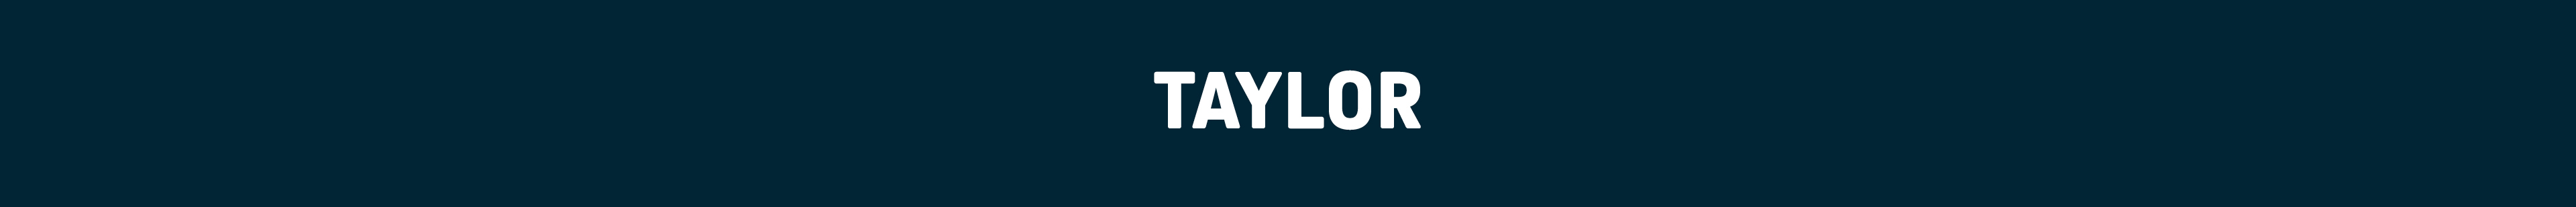 Taylor.jpg